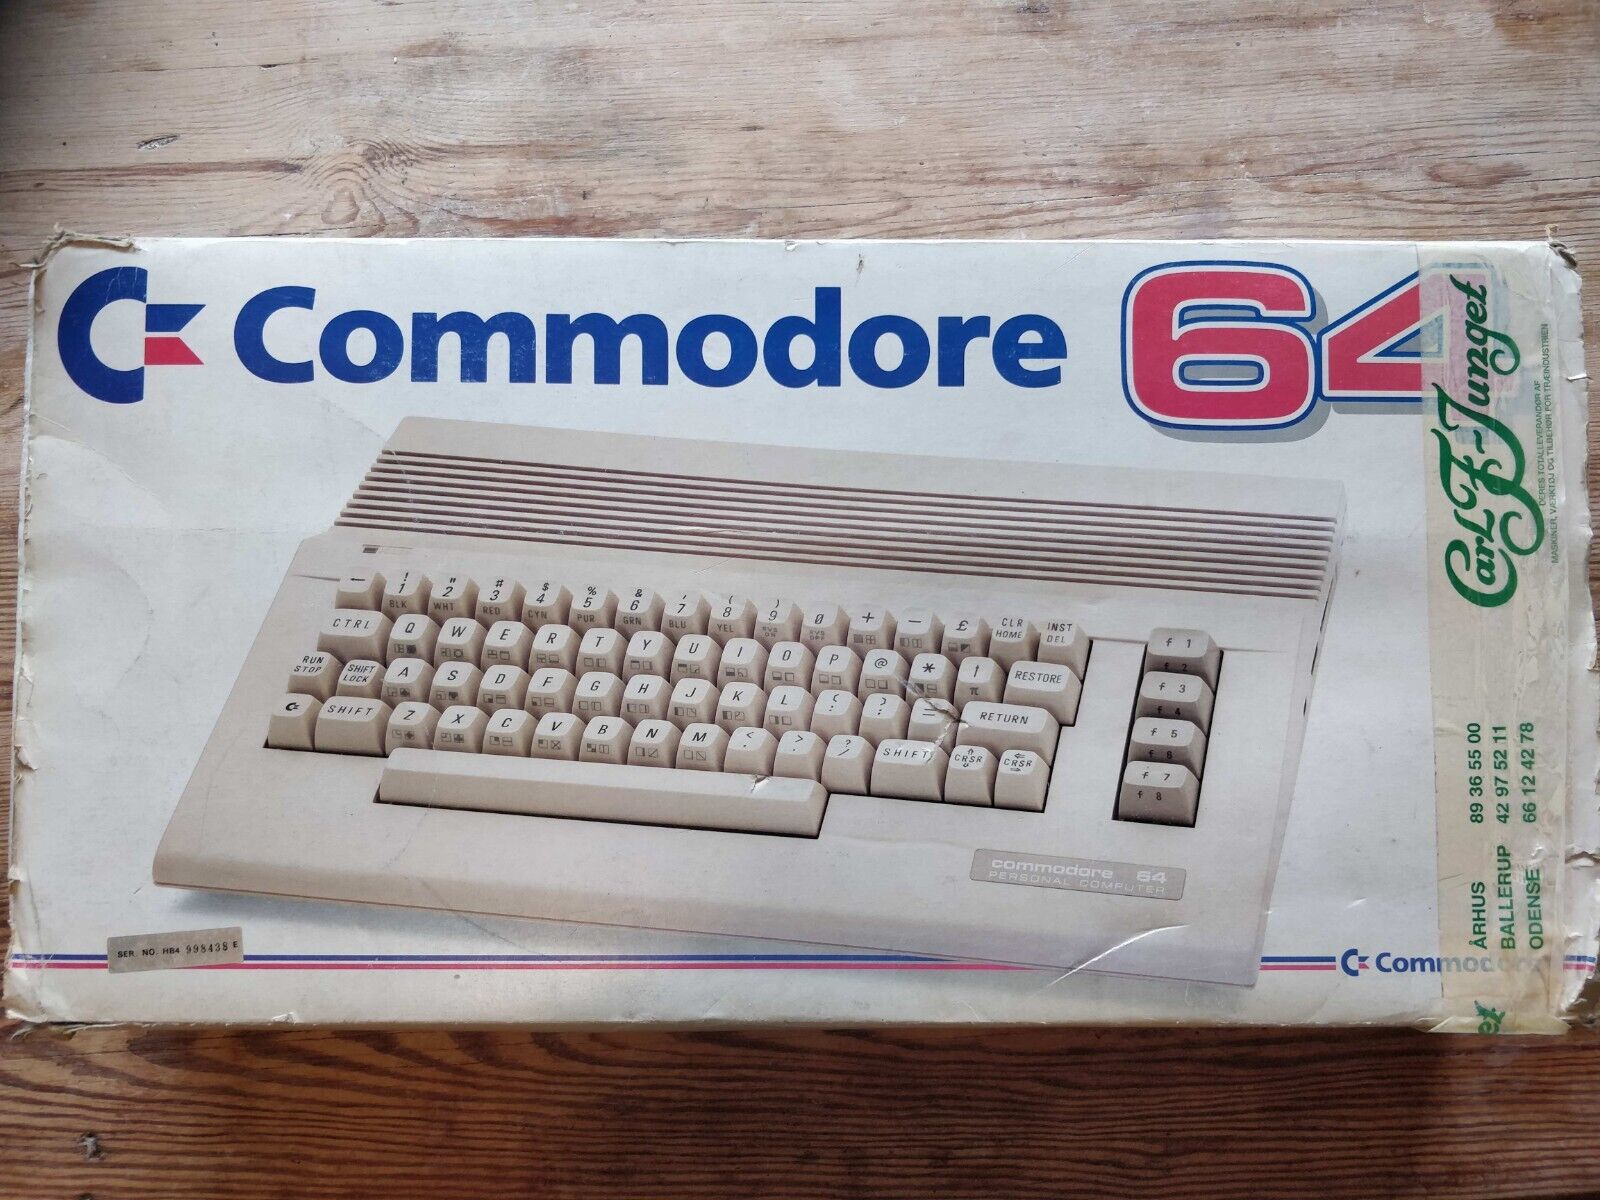 Commodore 64 MicroComputer - HB 4008810 (C64) complete in original box CIB